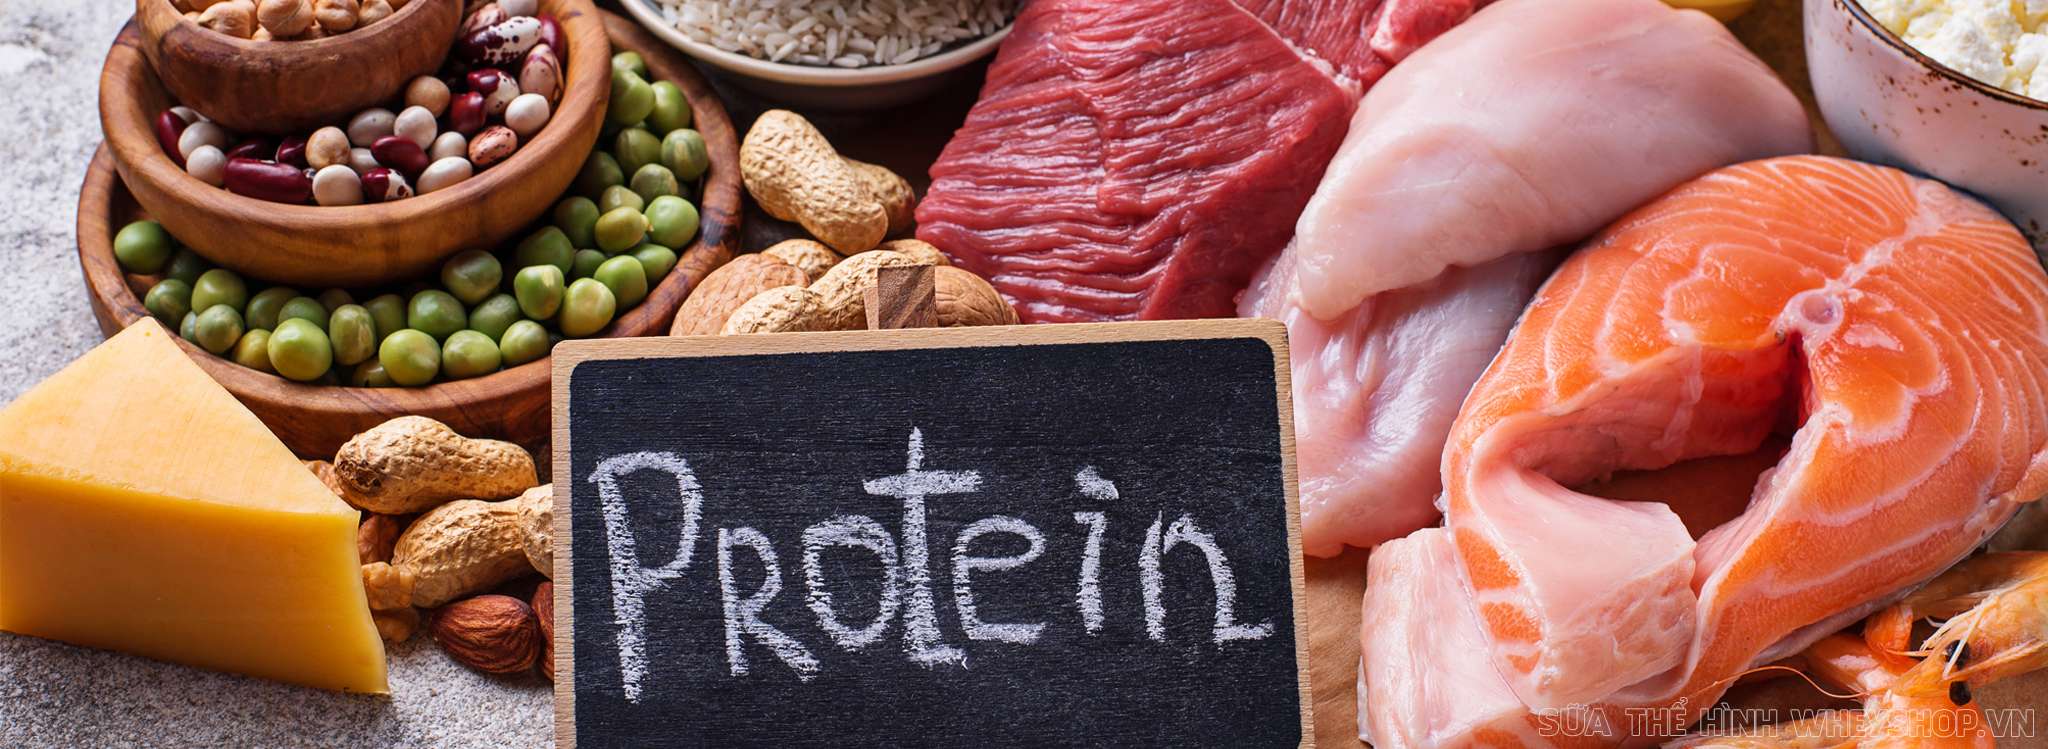 Protein, ngoài vai trò cấu thành lên các bộ phận cơ thể, Protein cũng là yếu tố chính giúp nuôi dưỡng xây dựng khối lượng cơ bắp trên cơ thể. Vậy bổ sung hàm...